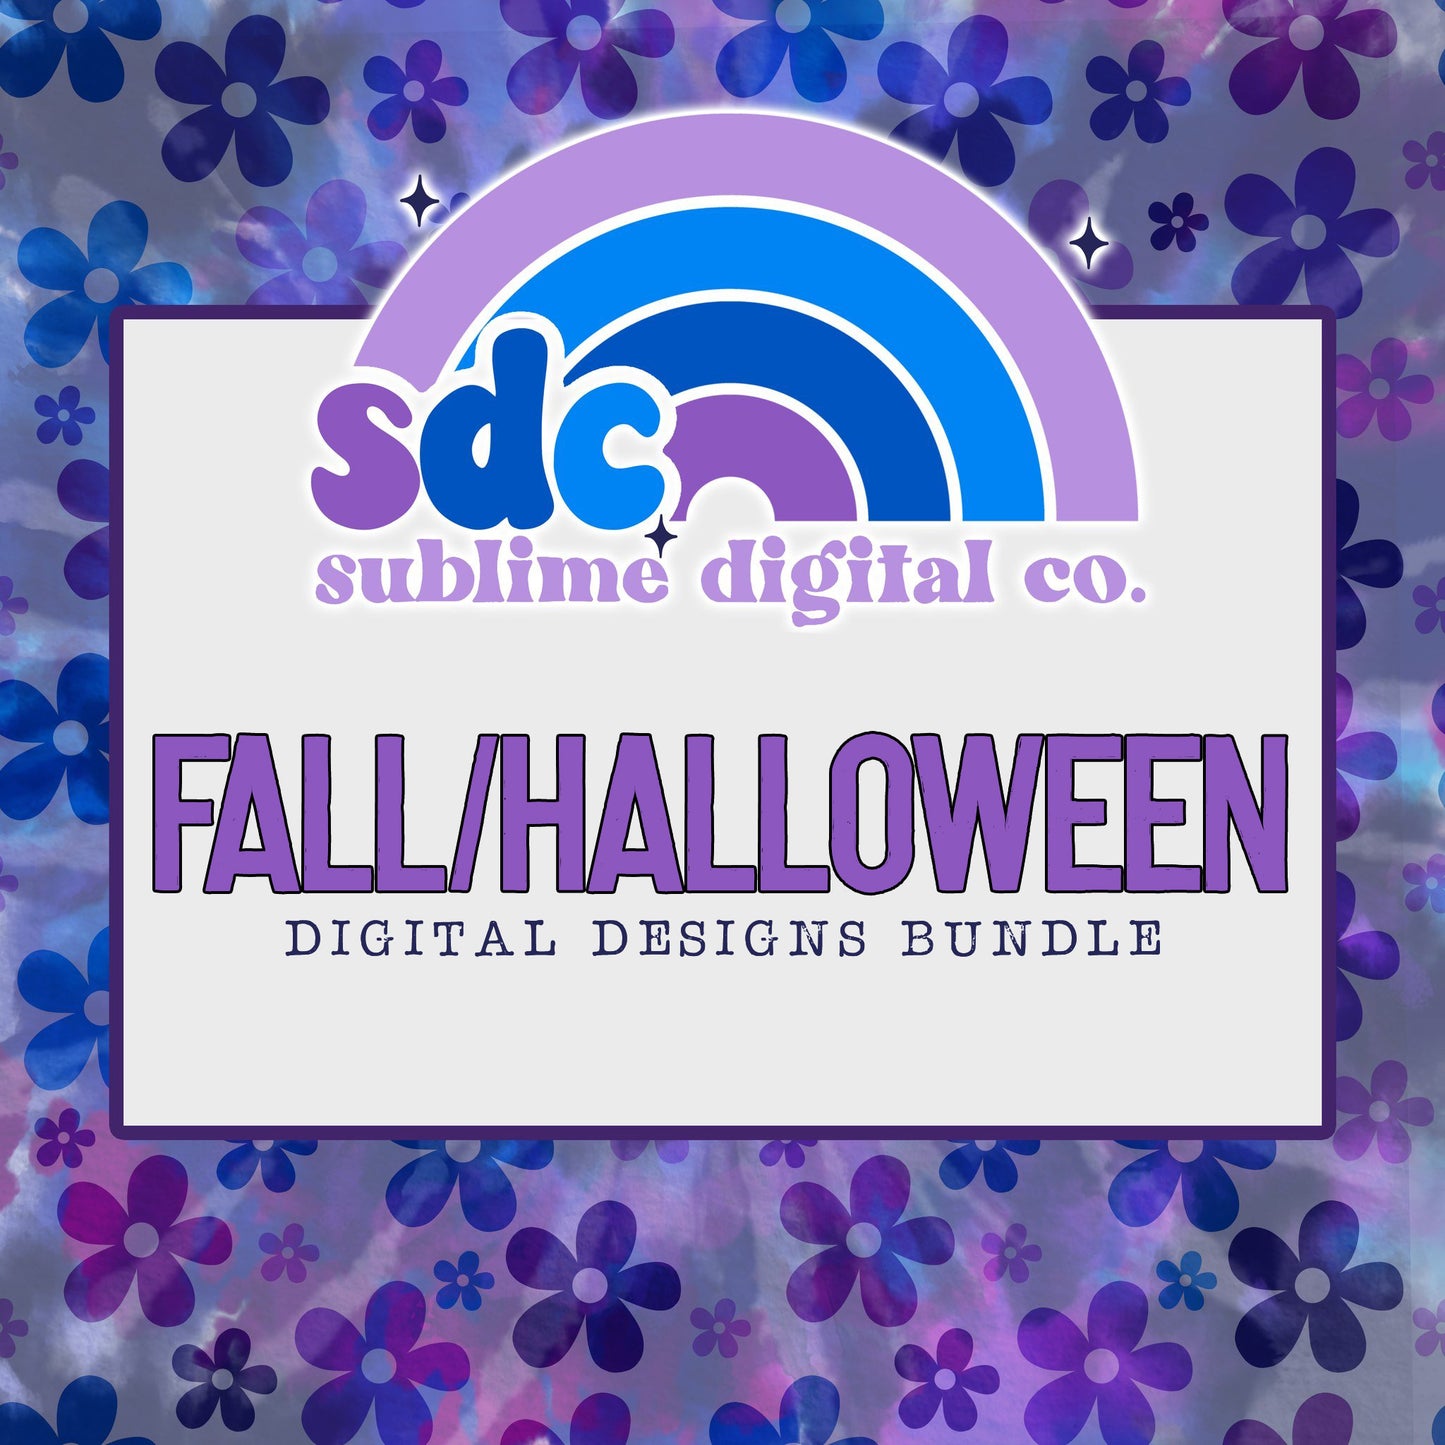 Fall/Halloween • Digital Design Bundles • Instant Download • Sublimation Design